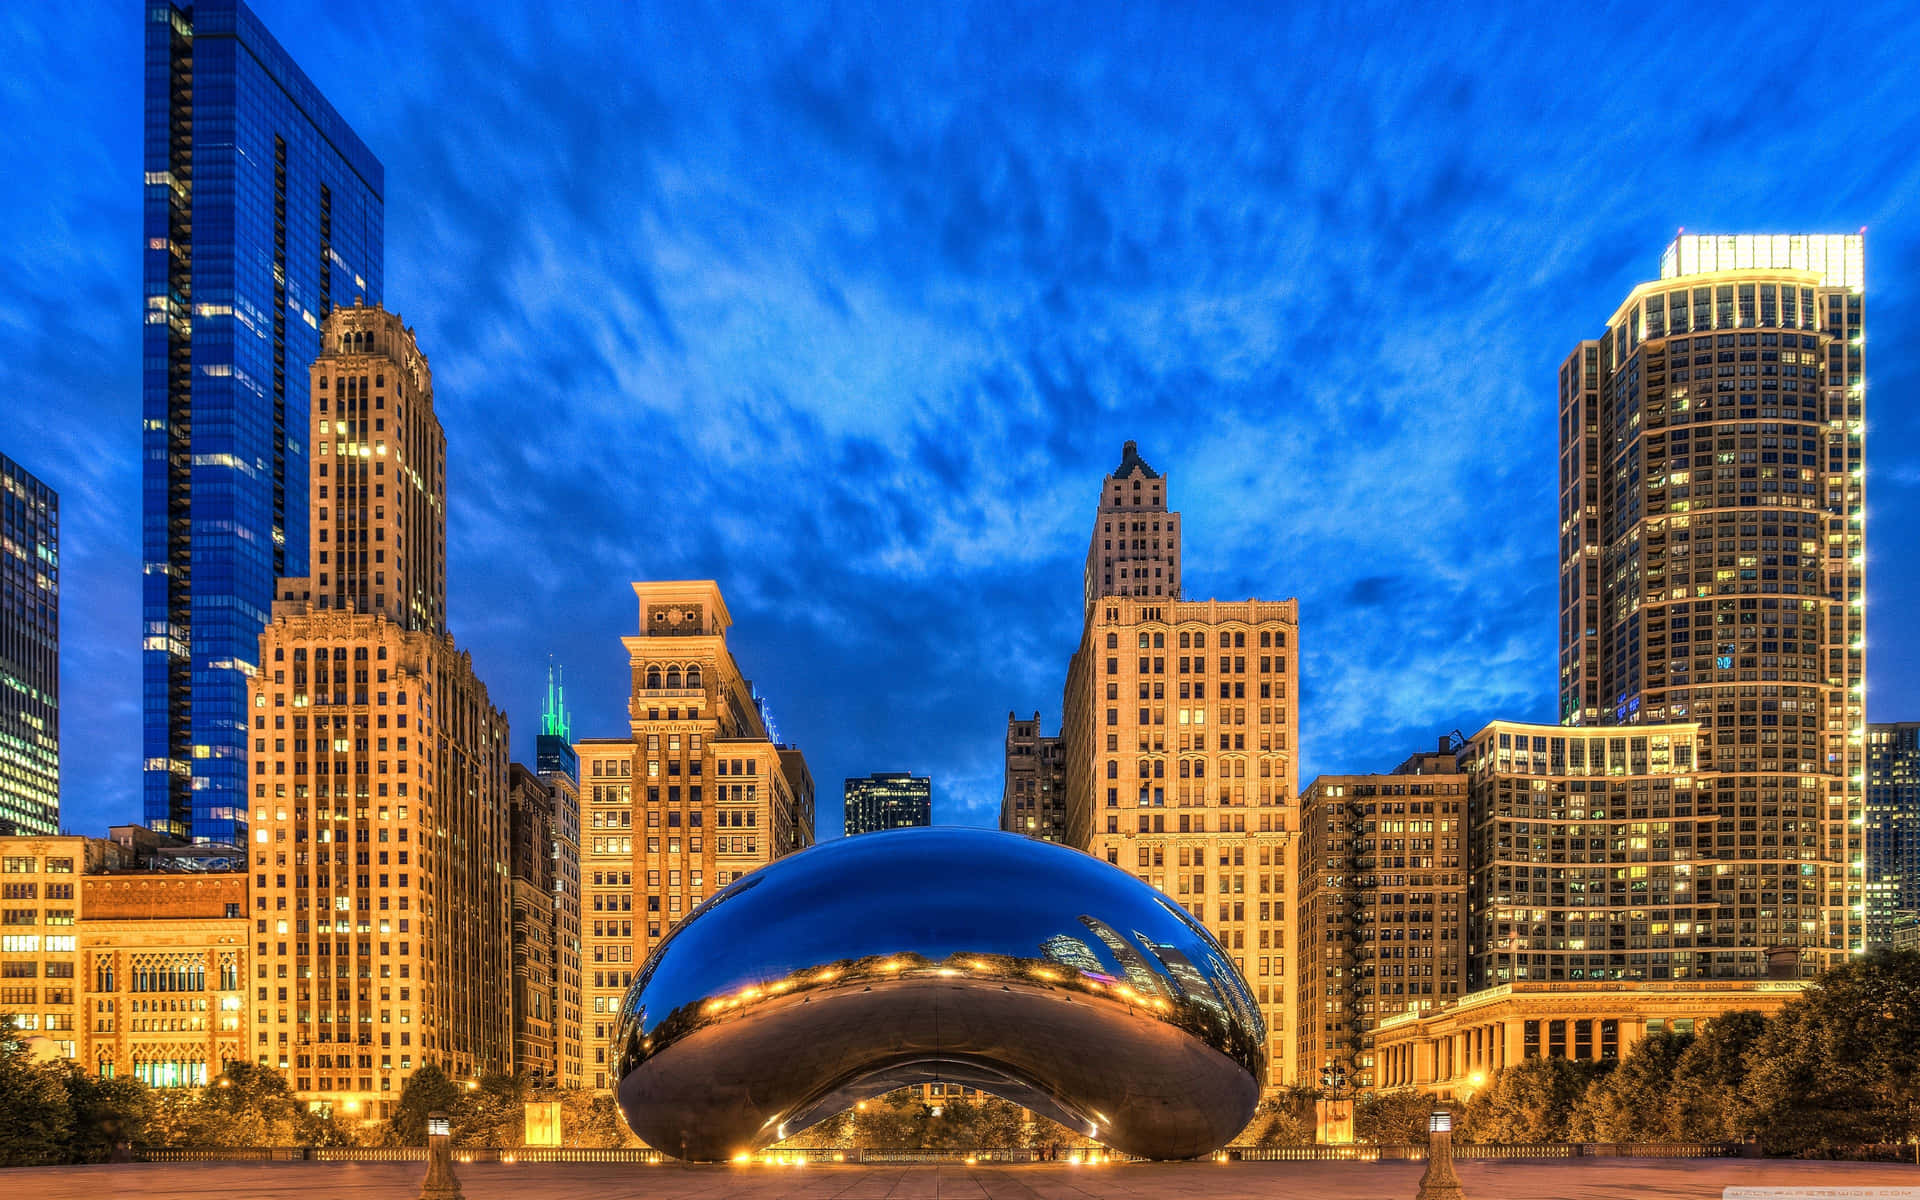 "Breathtaking skyline of Chicago, Illinois"